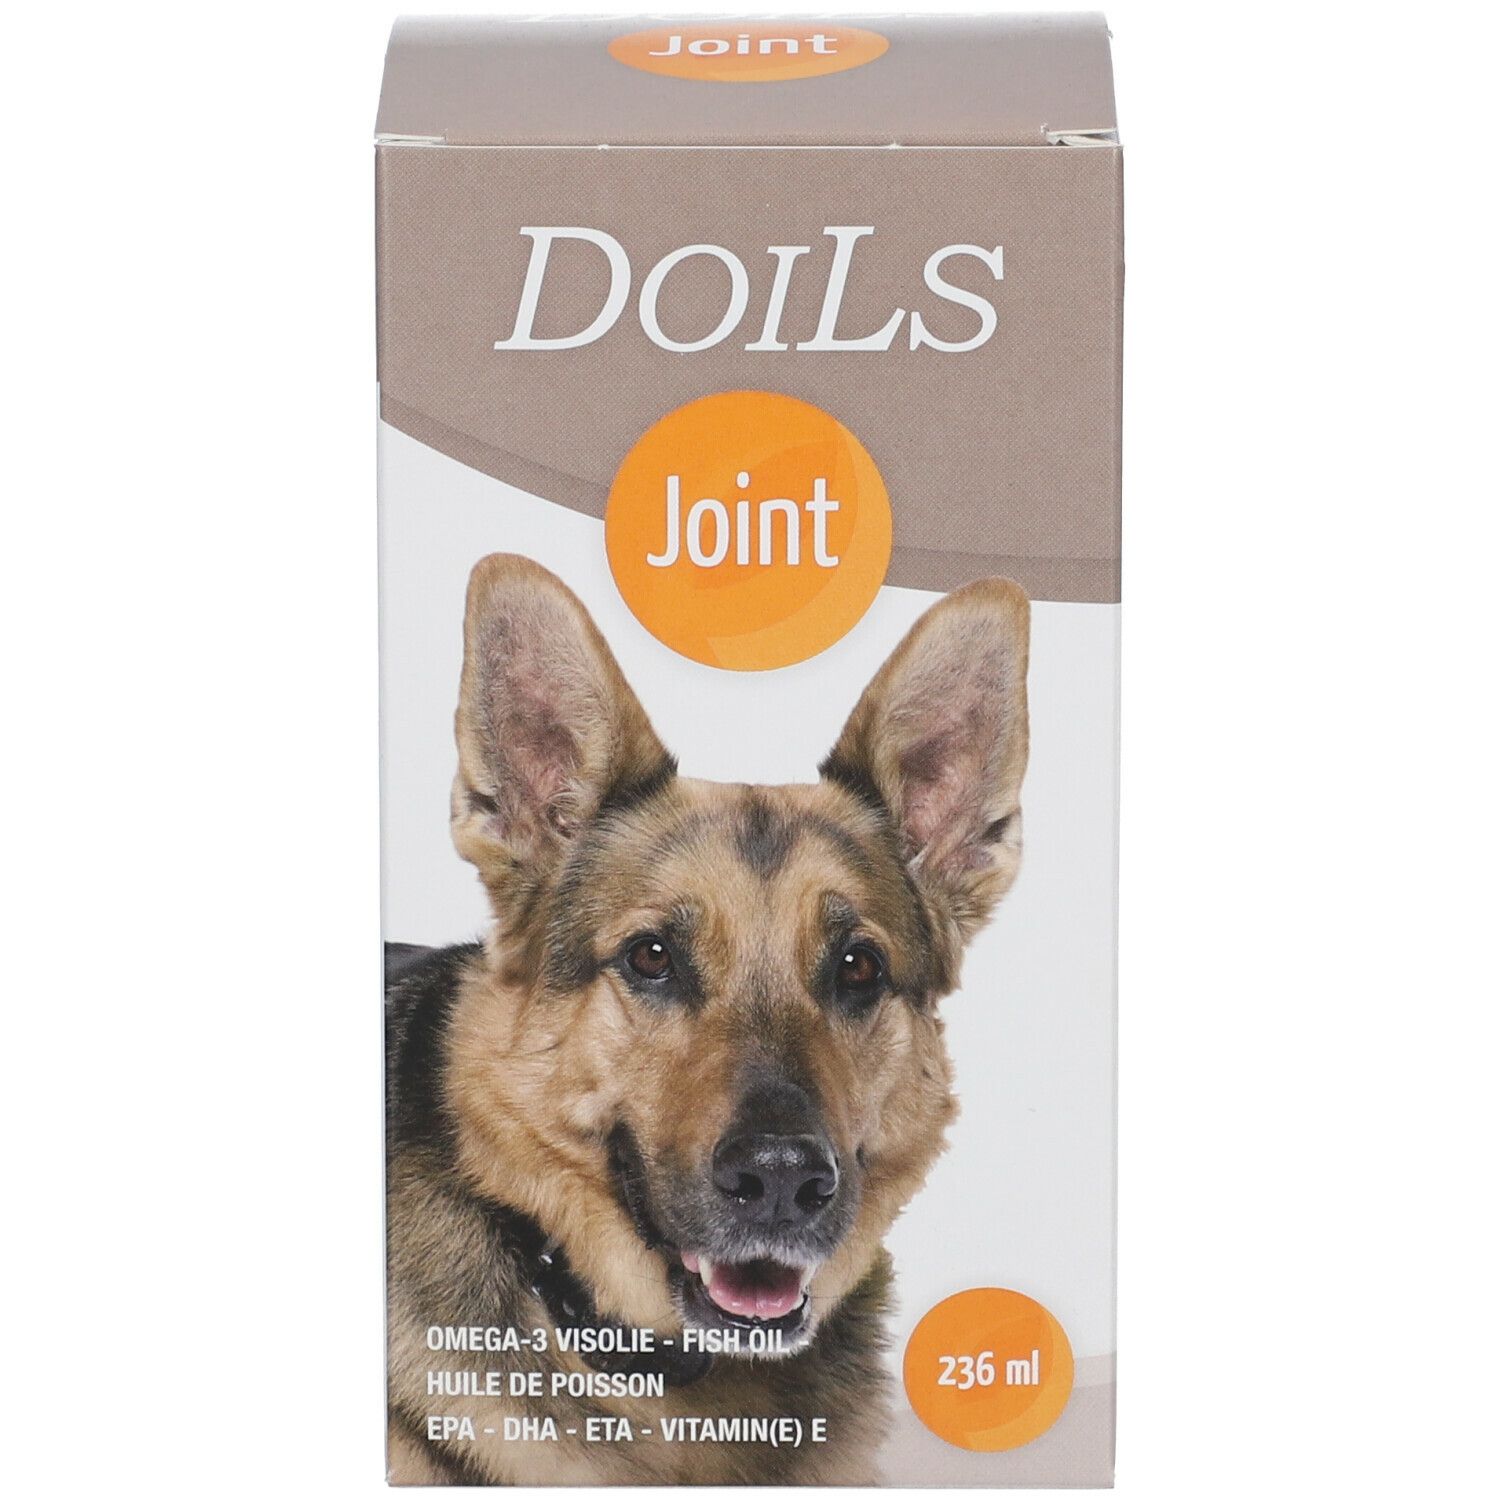 DoiLs Joint